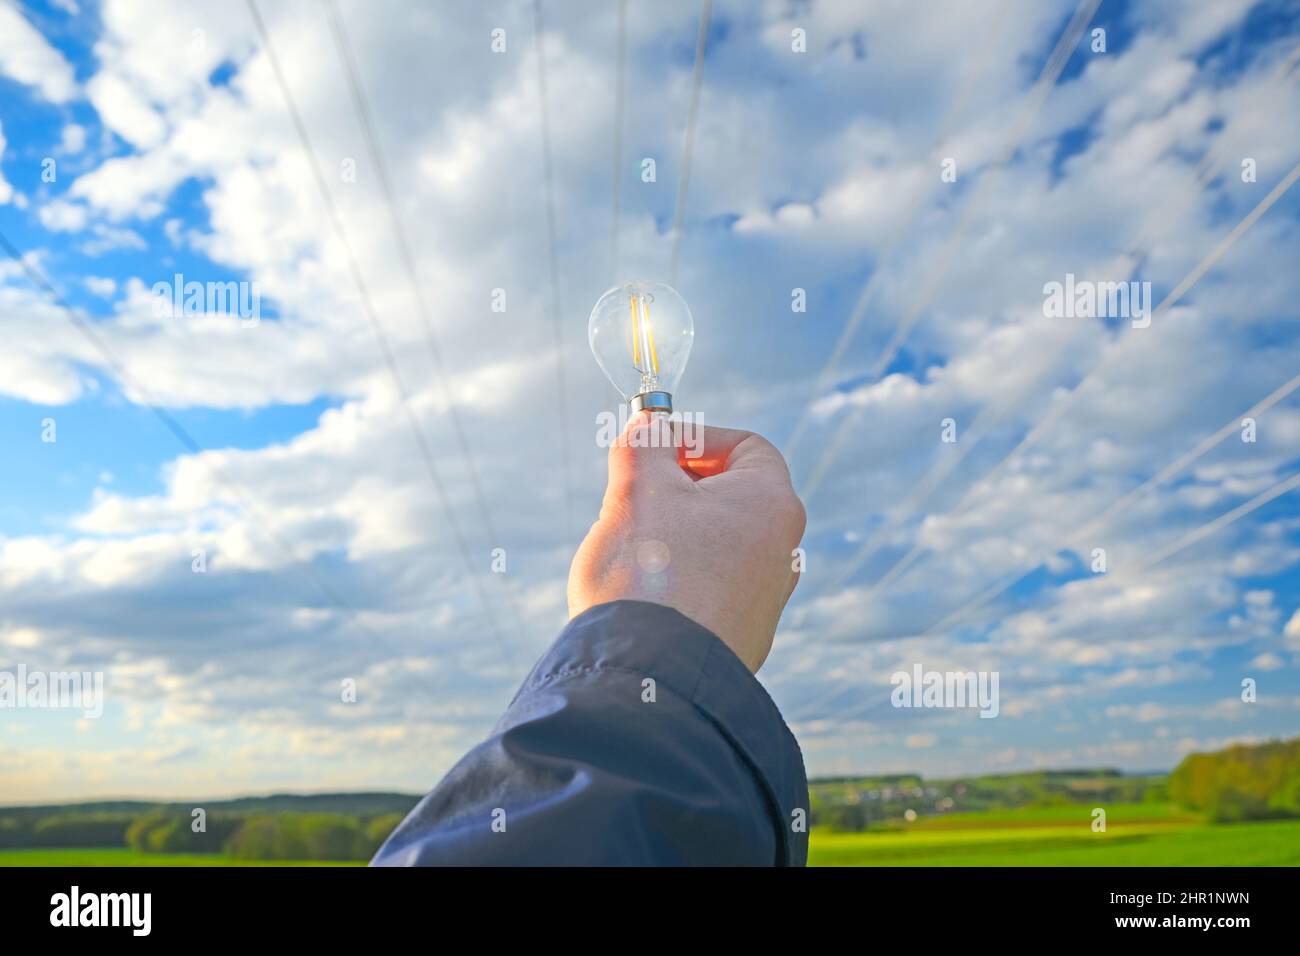 Strom und grüne Energie.Glühbirne in der Hand auf Stromleitung Hintergrund.Stromleitung Stromleitungen auf blauem Himmel und grünem Feld Stockfoto